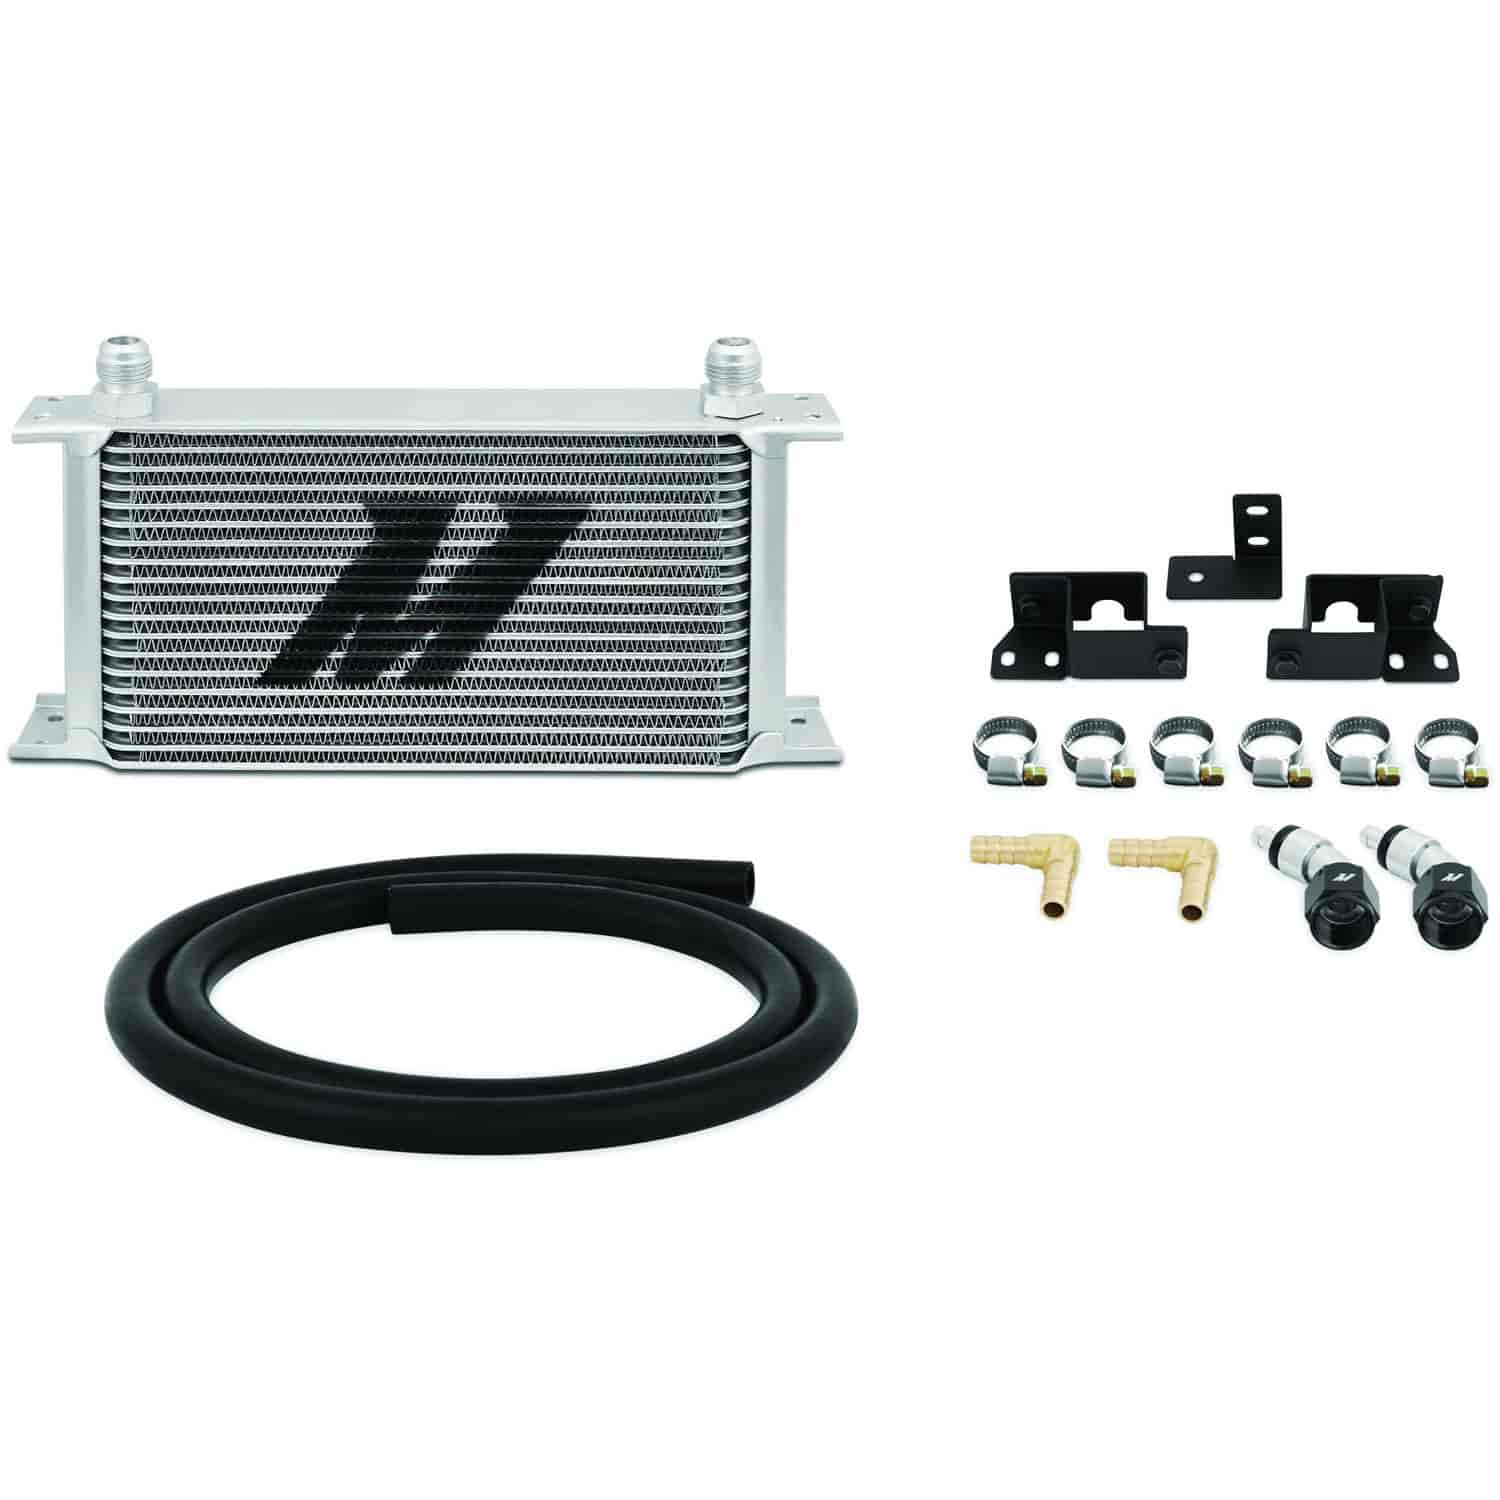 MMTC-WRA-07 Transmission Fluid Cooler Kit fits 2007-2011 Jeep Wrangler JK [Silver]